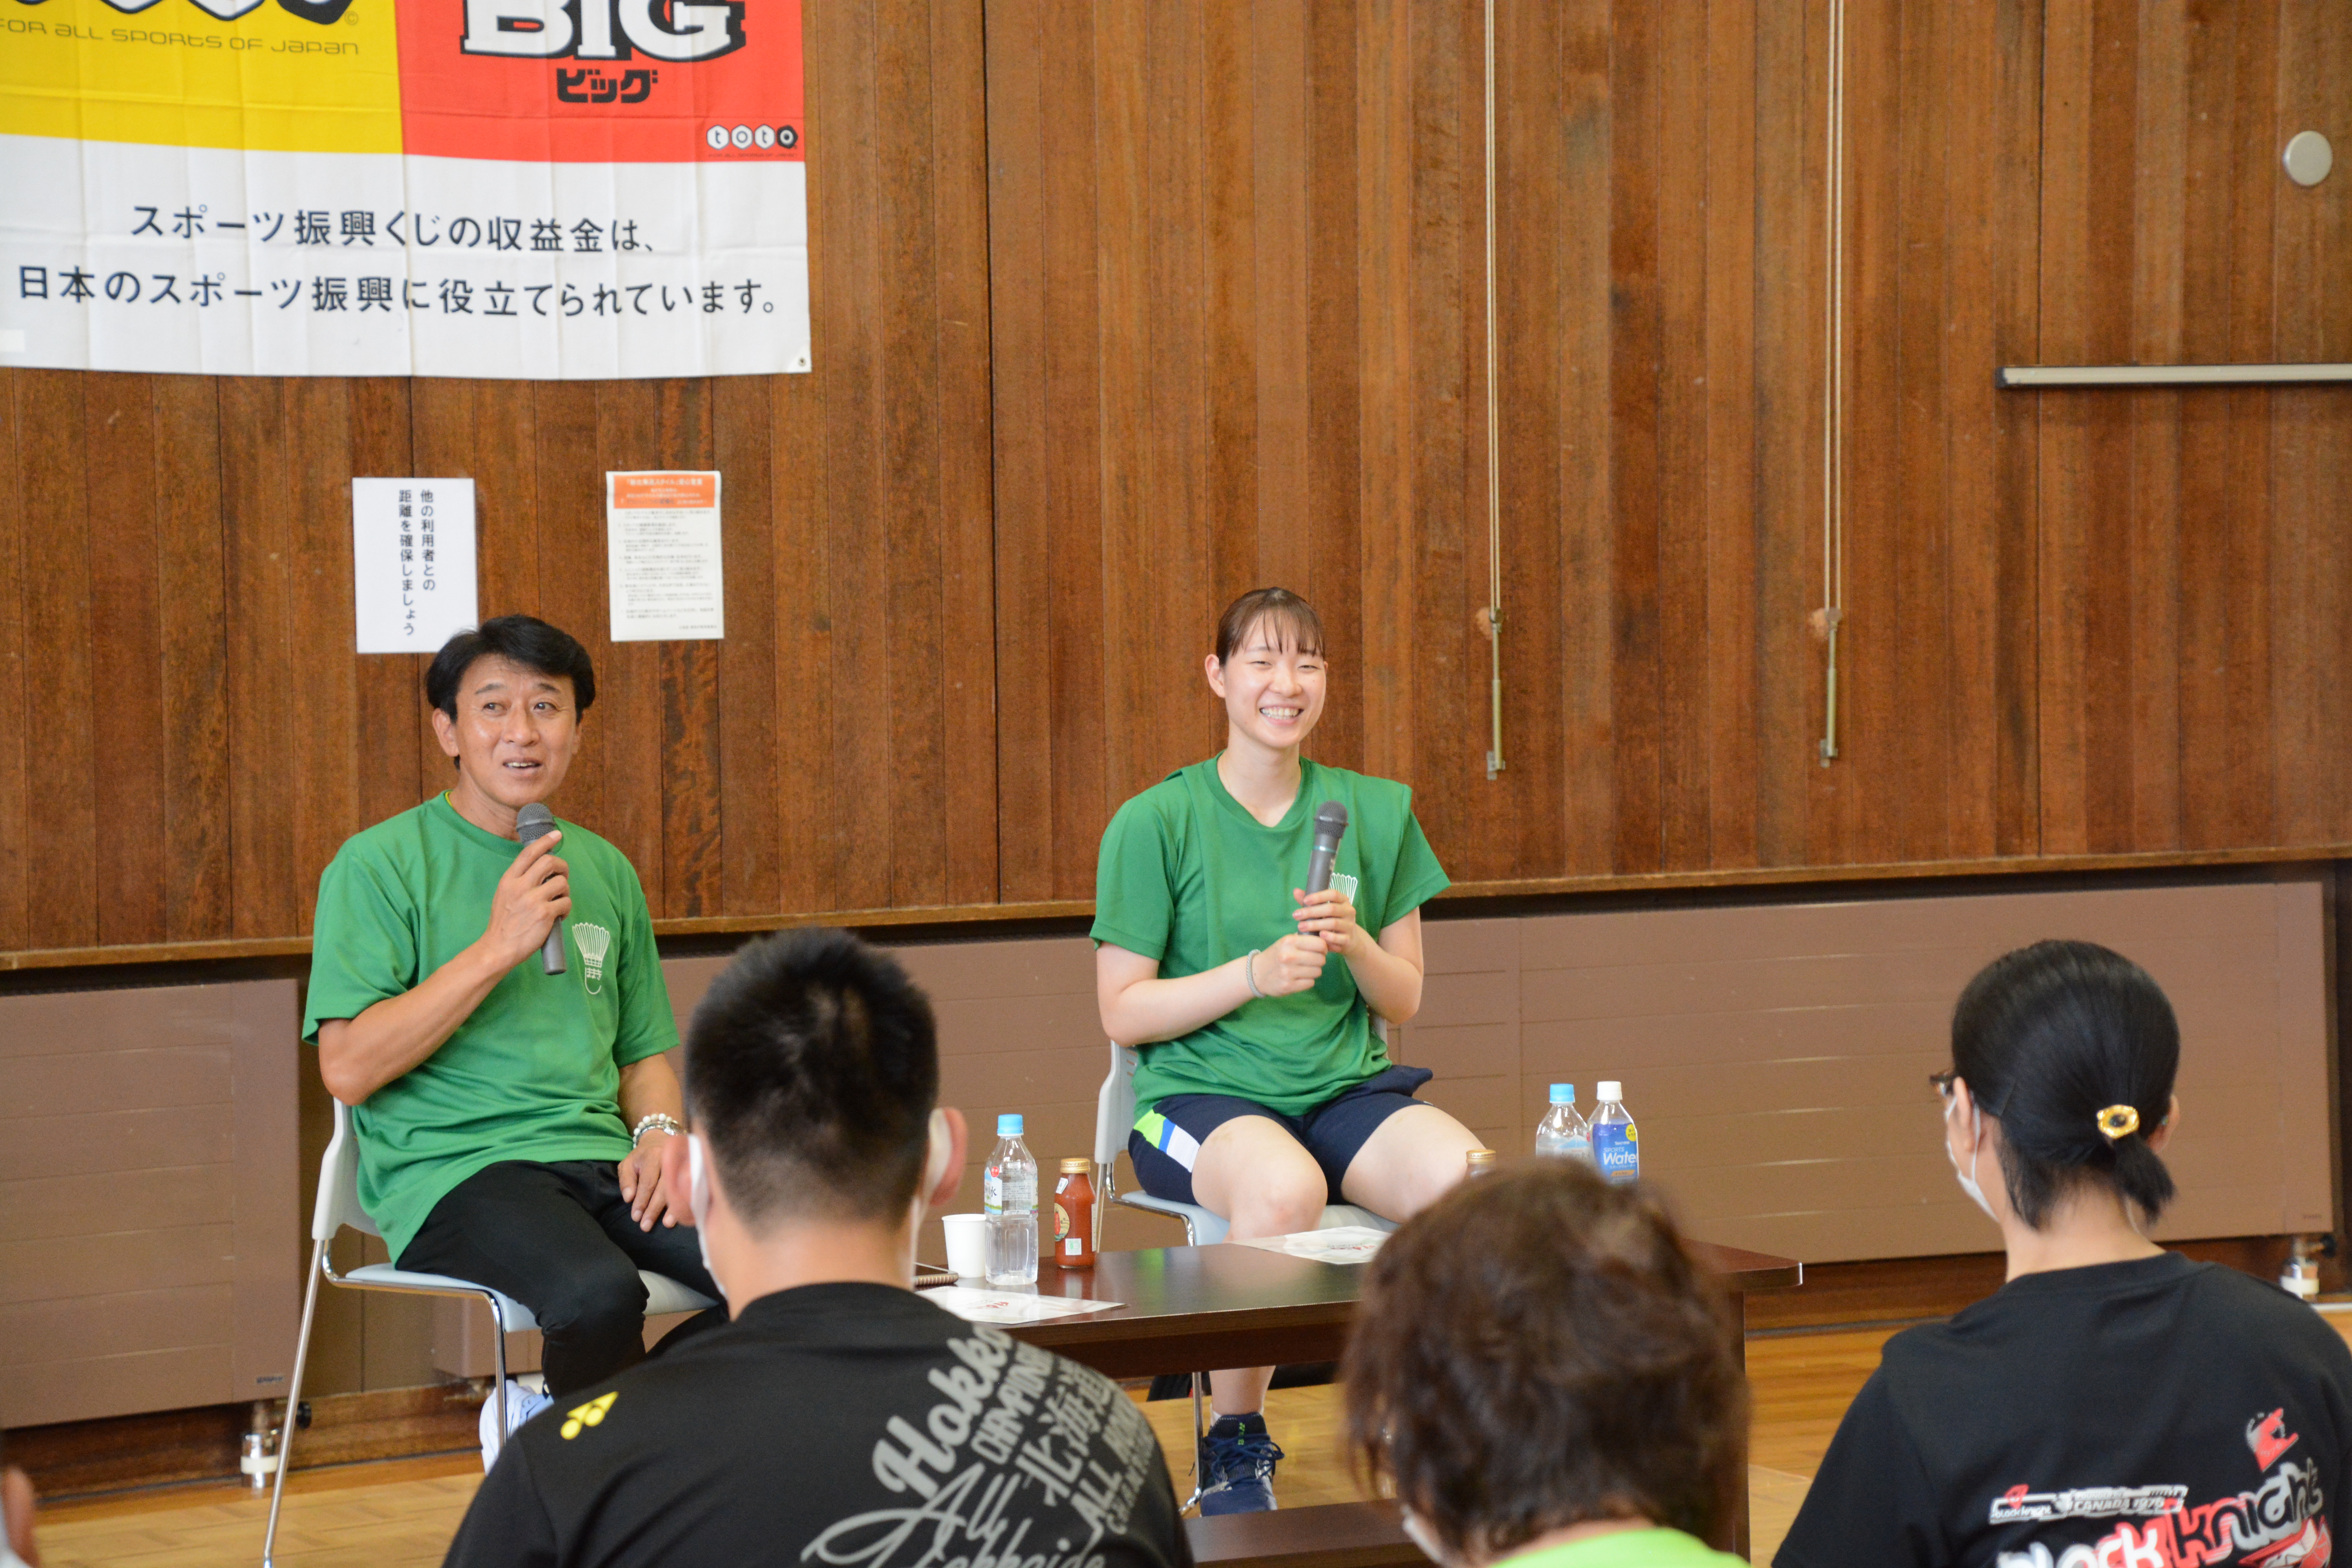 バドミントン教室の後は松本氏と鈴木氏の対談形式で「コーチ・ペアレンツ講習会」が開かれました。